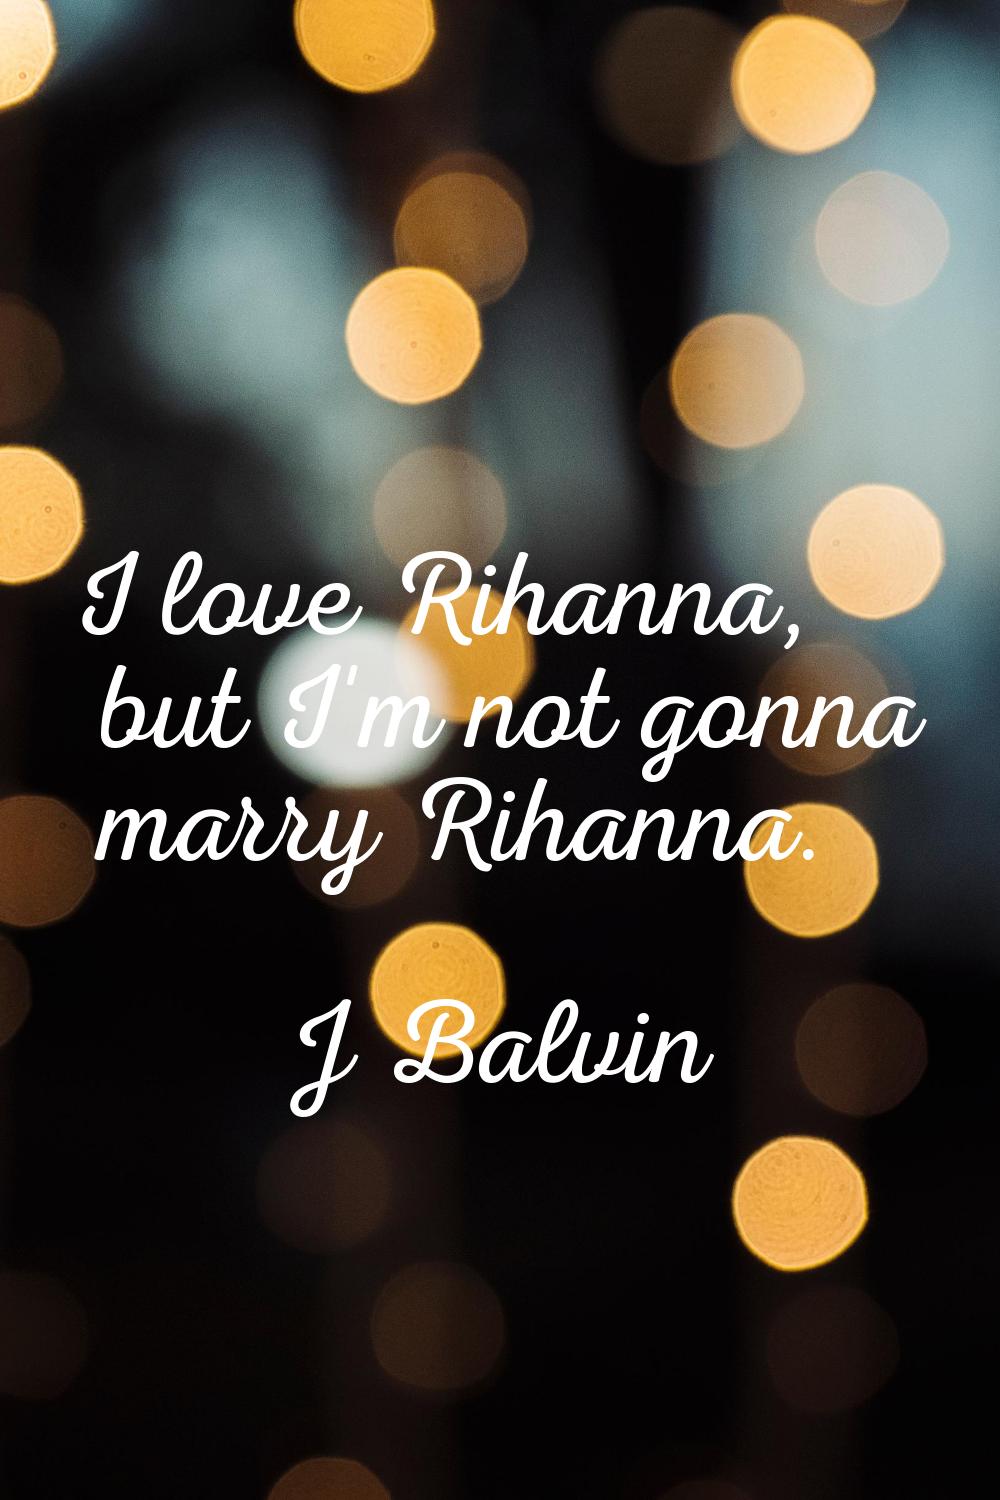 I love Rihanna, but I'm not gonna marry Rihanna.